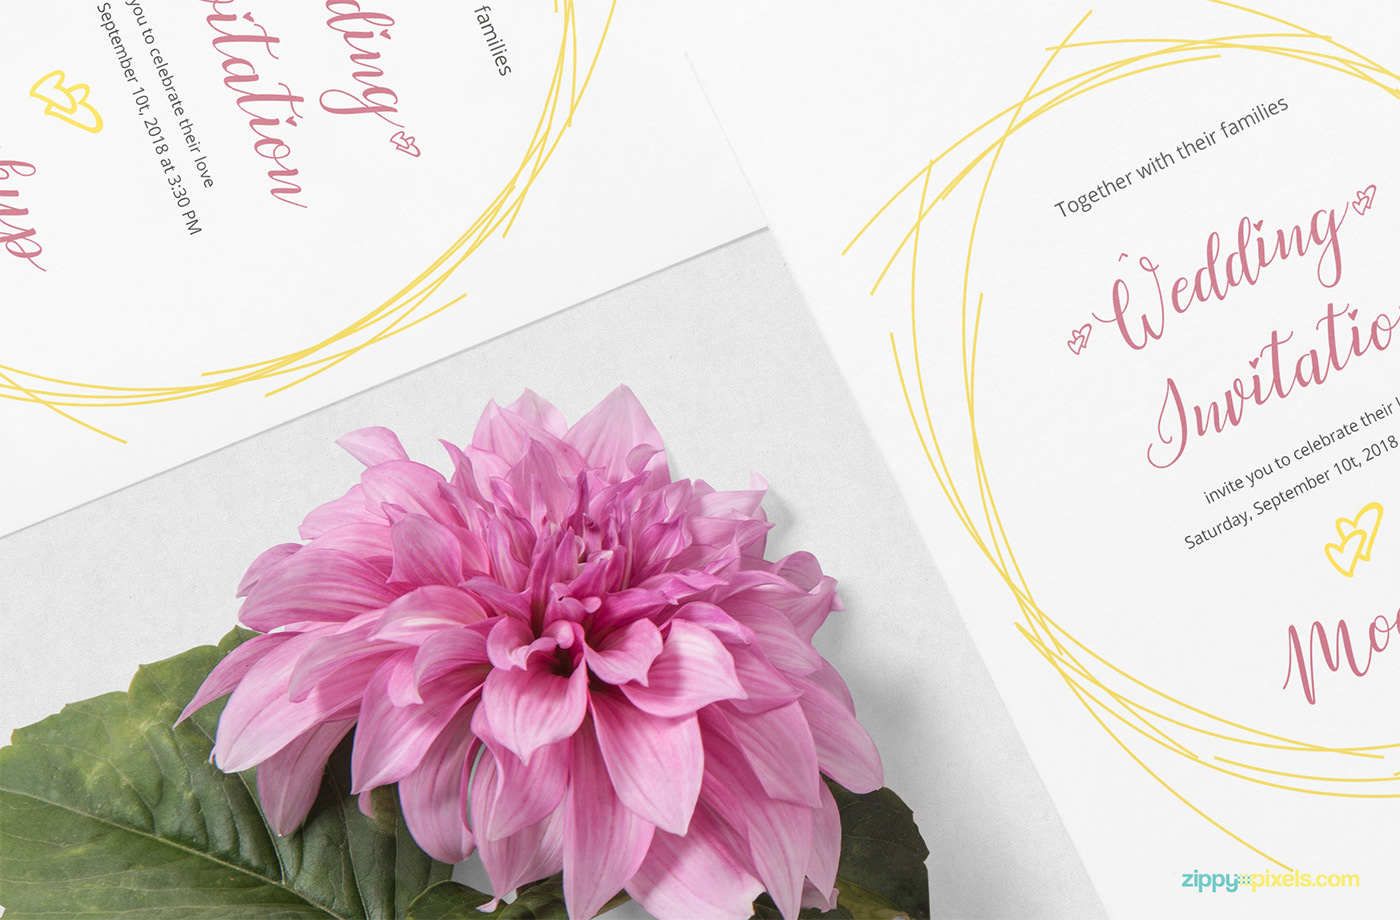 free freebie Mockup psd photoshop Invitation wedding card envelope Stationery